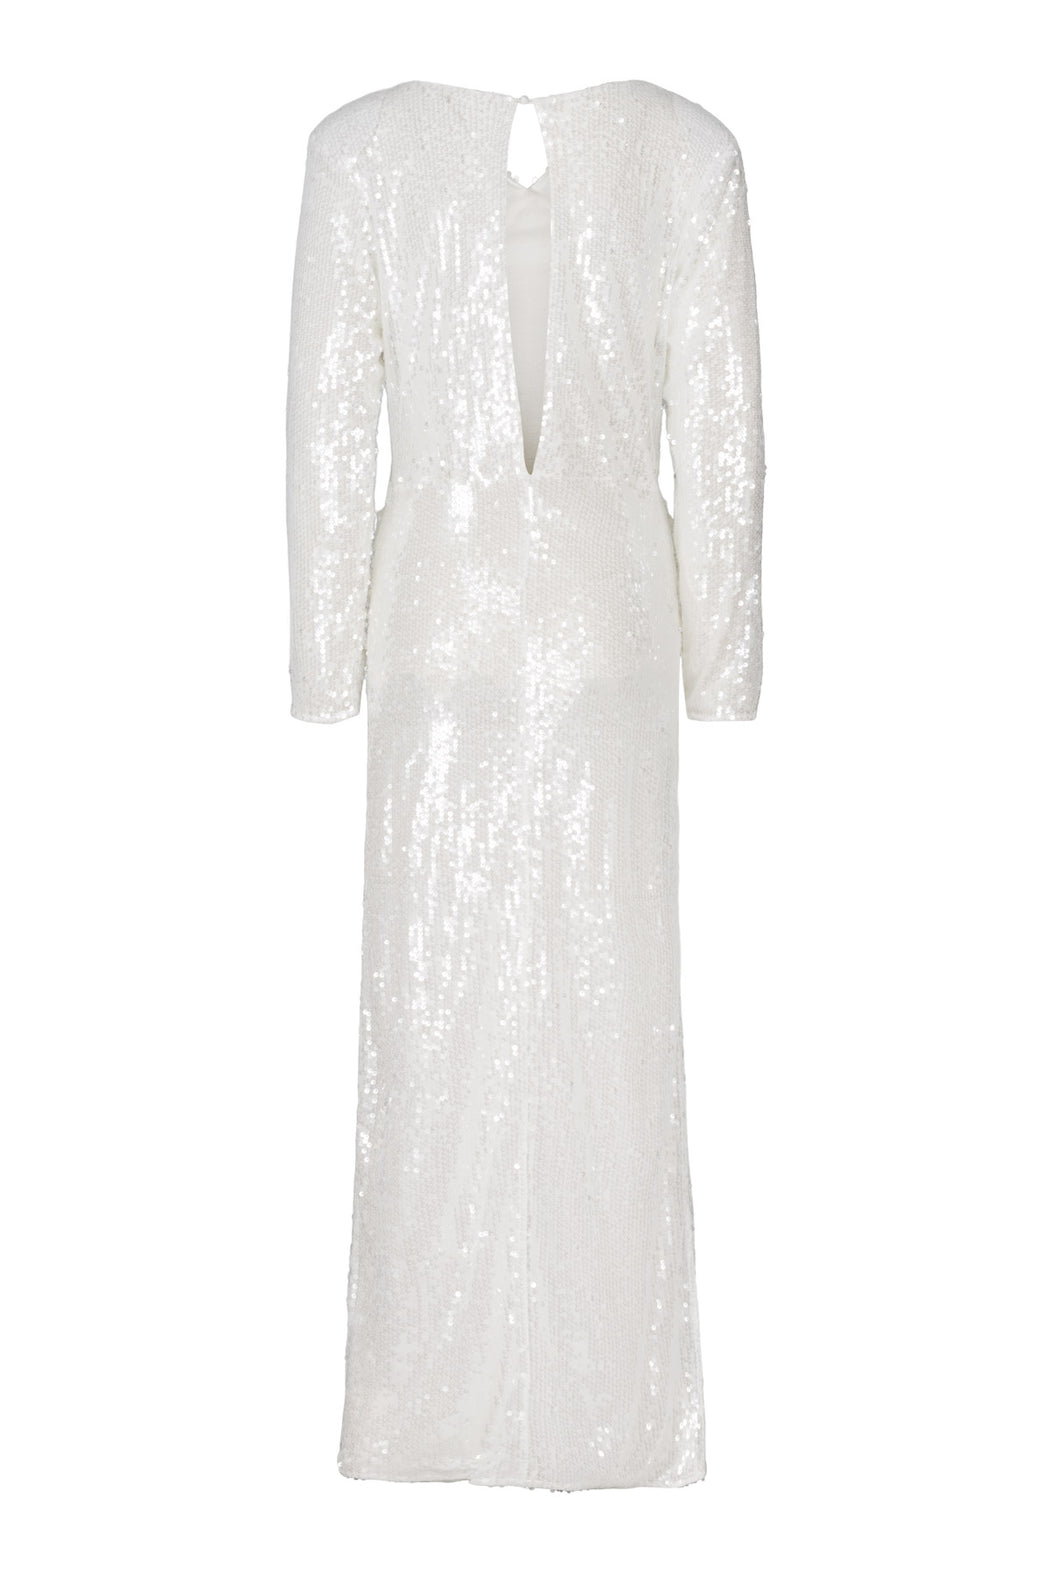 Envelope1976 Stardust dress - Leftover fabric Dress White